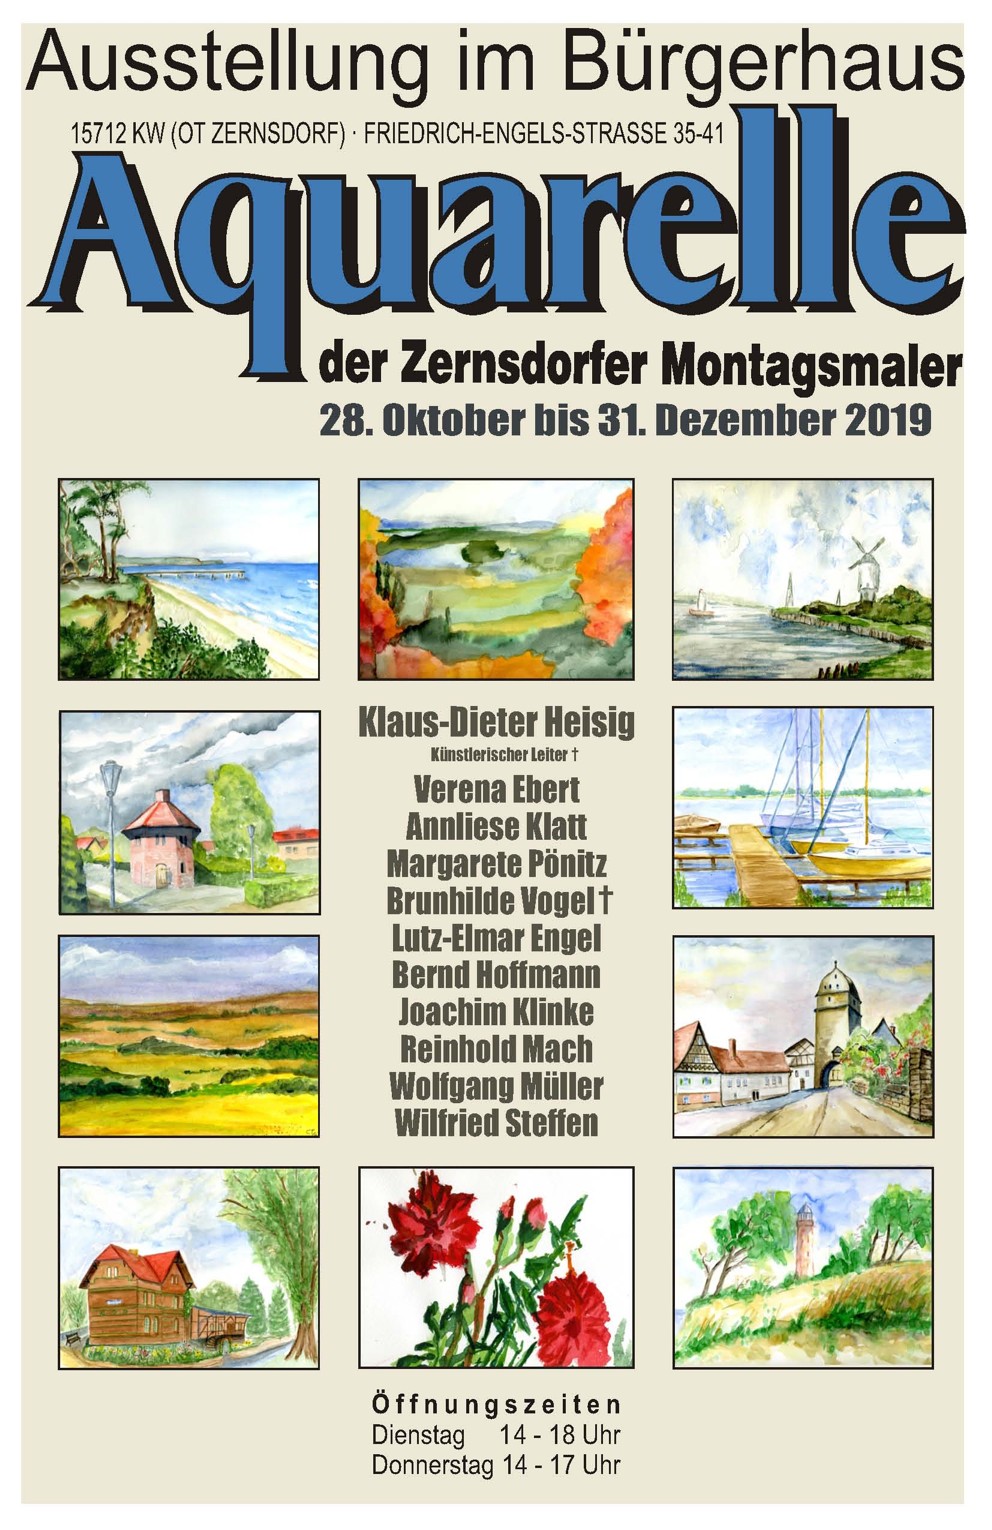 Ausstellung der "Zernsdorfer Montagsmaler" im Bürgerhaus Zernsdorf